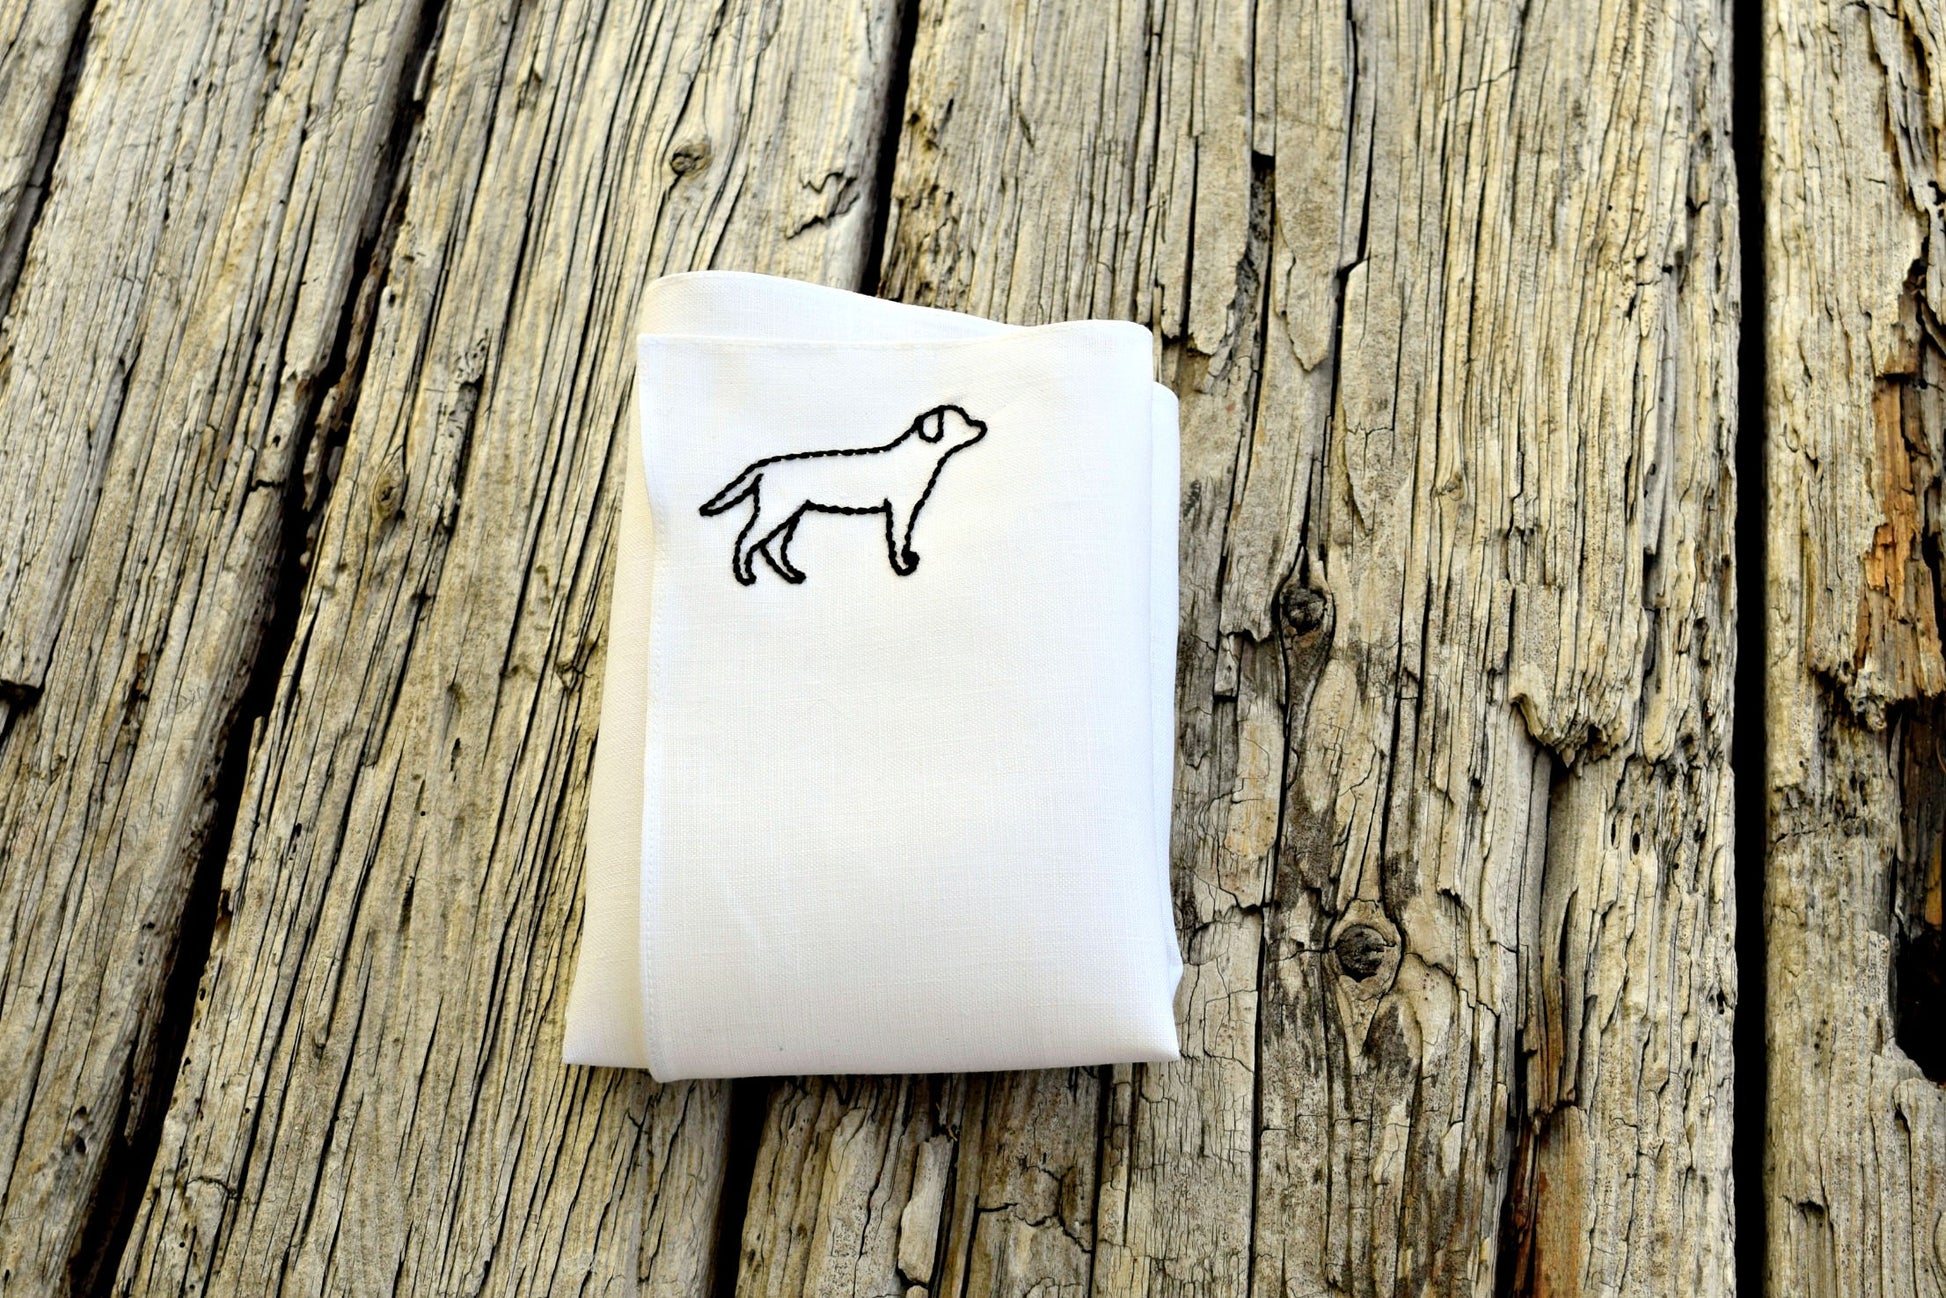 Black labrador retriever dog outline embroidered onto one corner of white linen pocket square